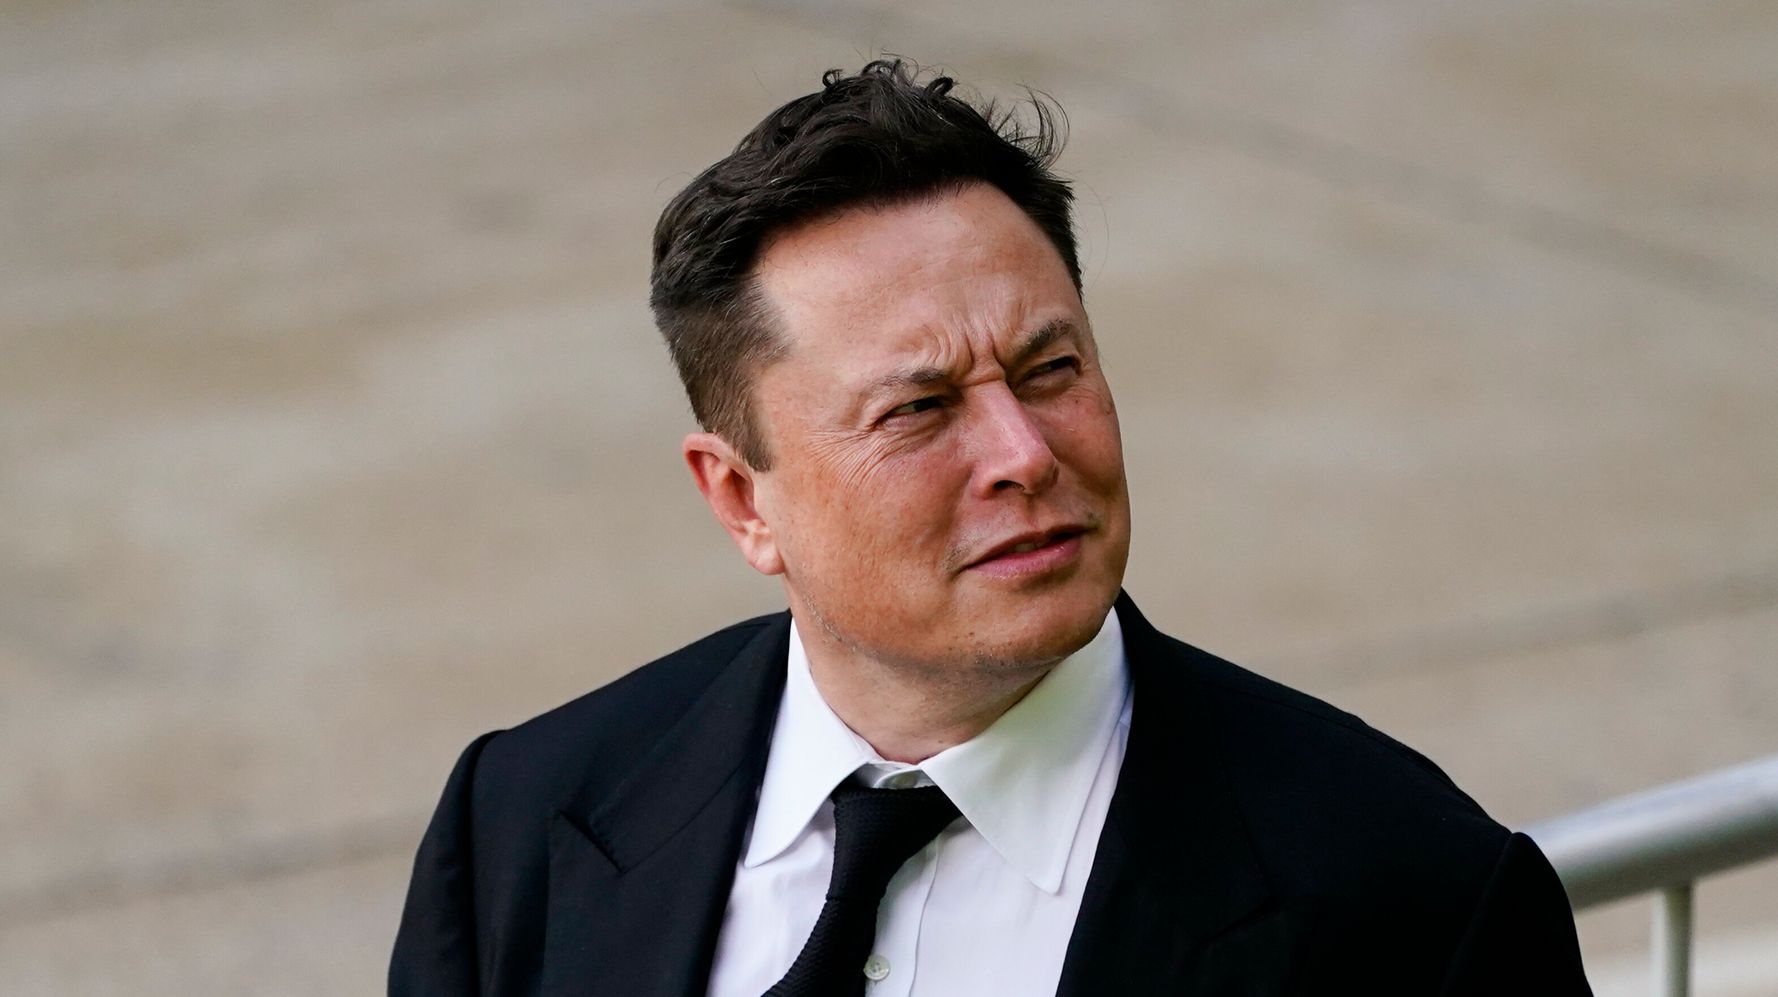 Co-fundador da Dogecoin: Elon Musk Um ‘Grifter’ que é realmente bom em fingir’